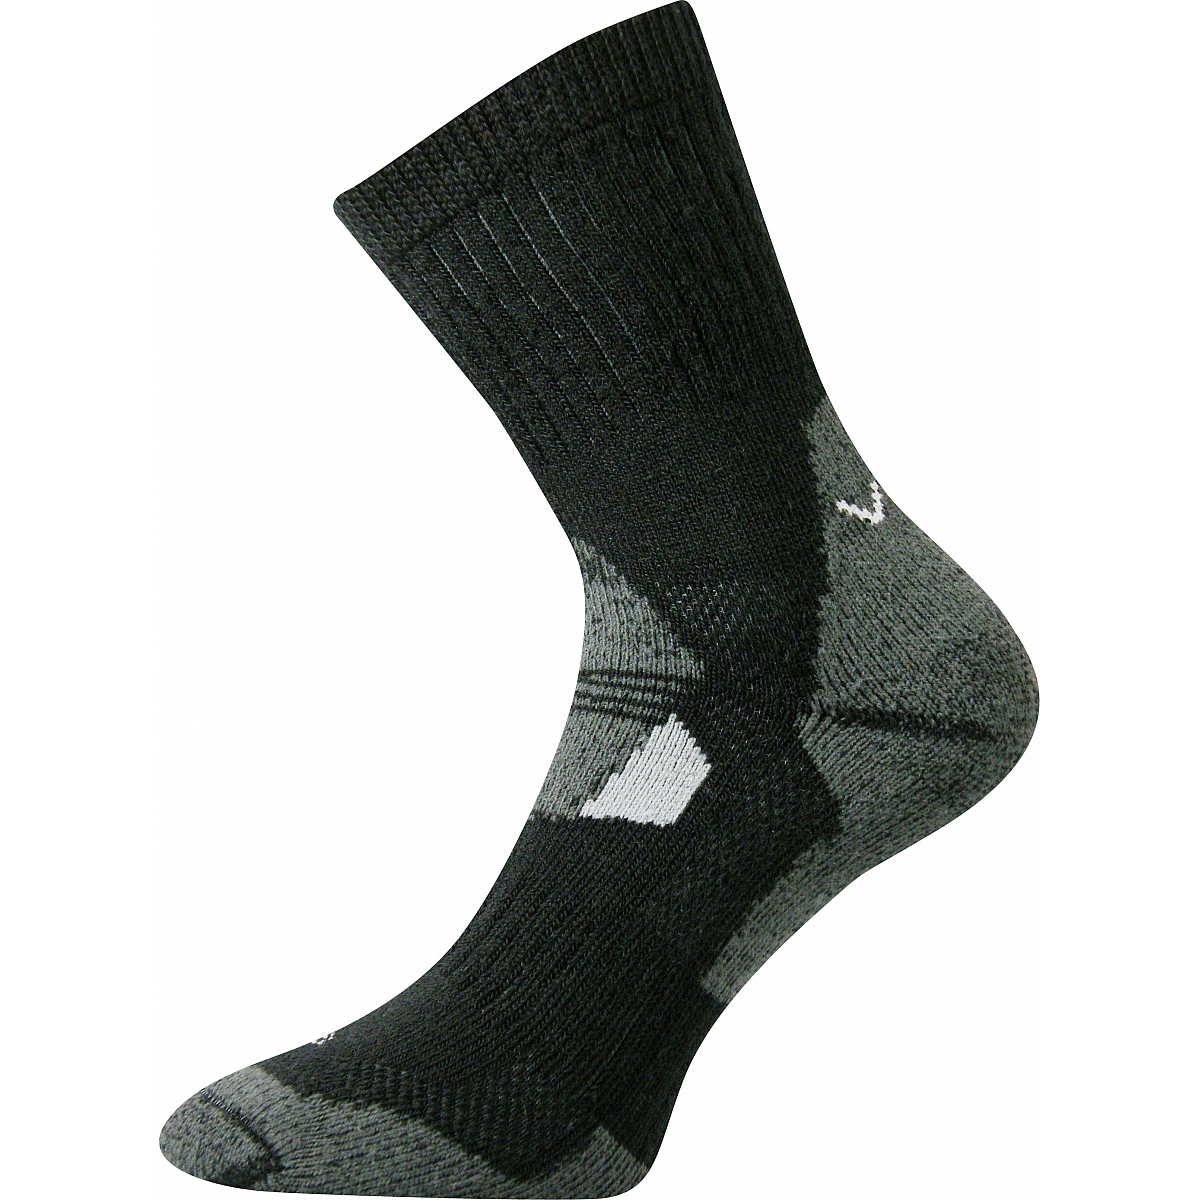 Extra teplé vlněné ponožky Voxx Stabil - černé-šedé, 35-38